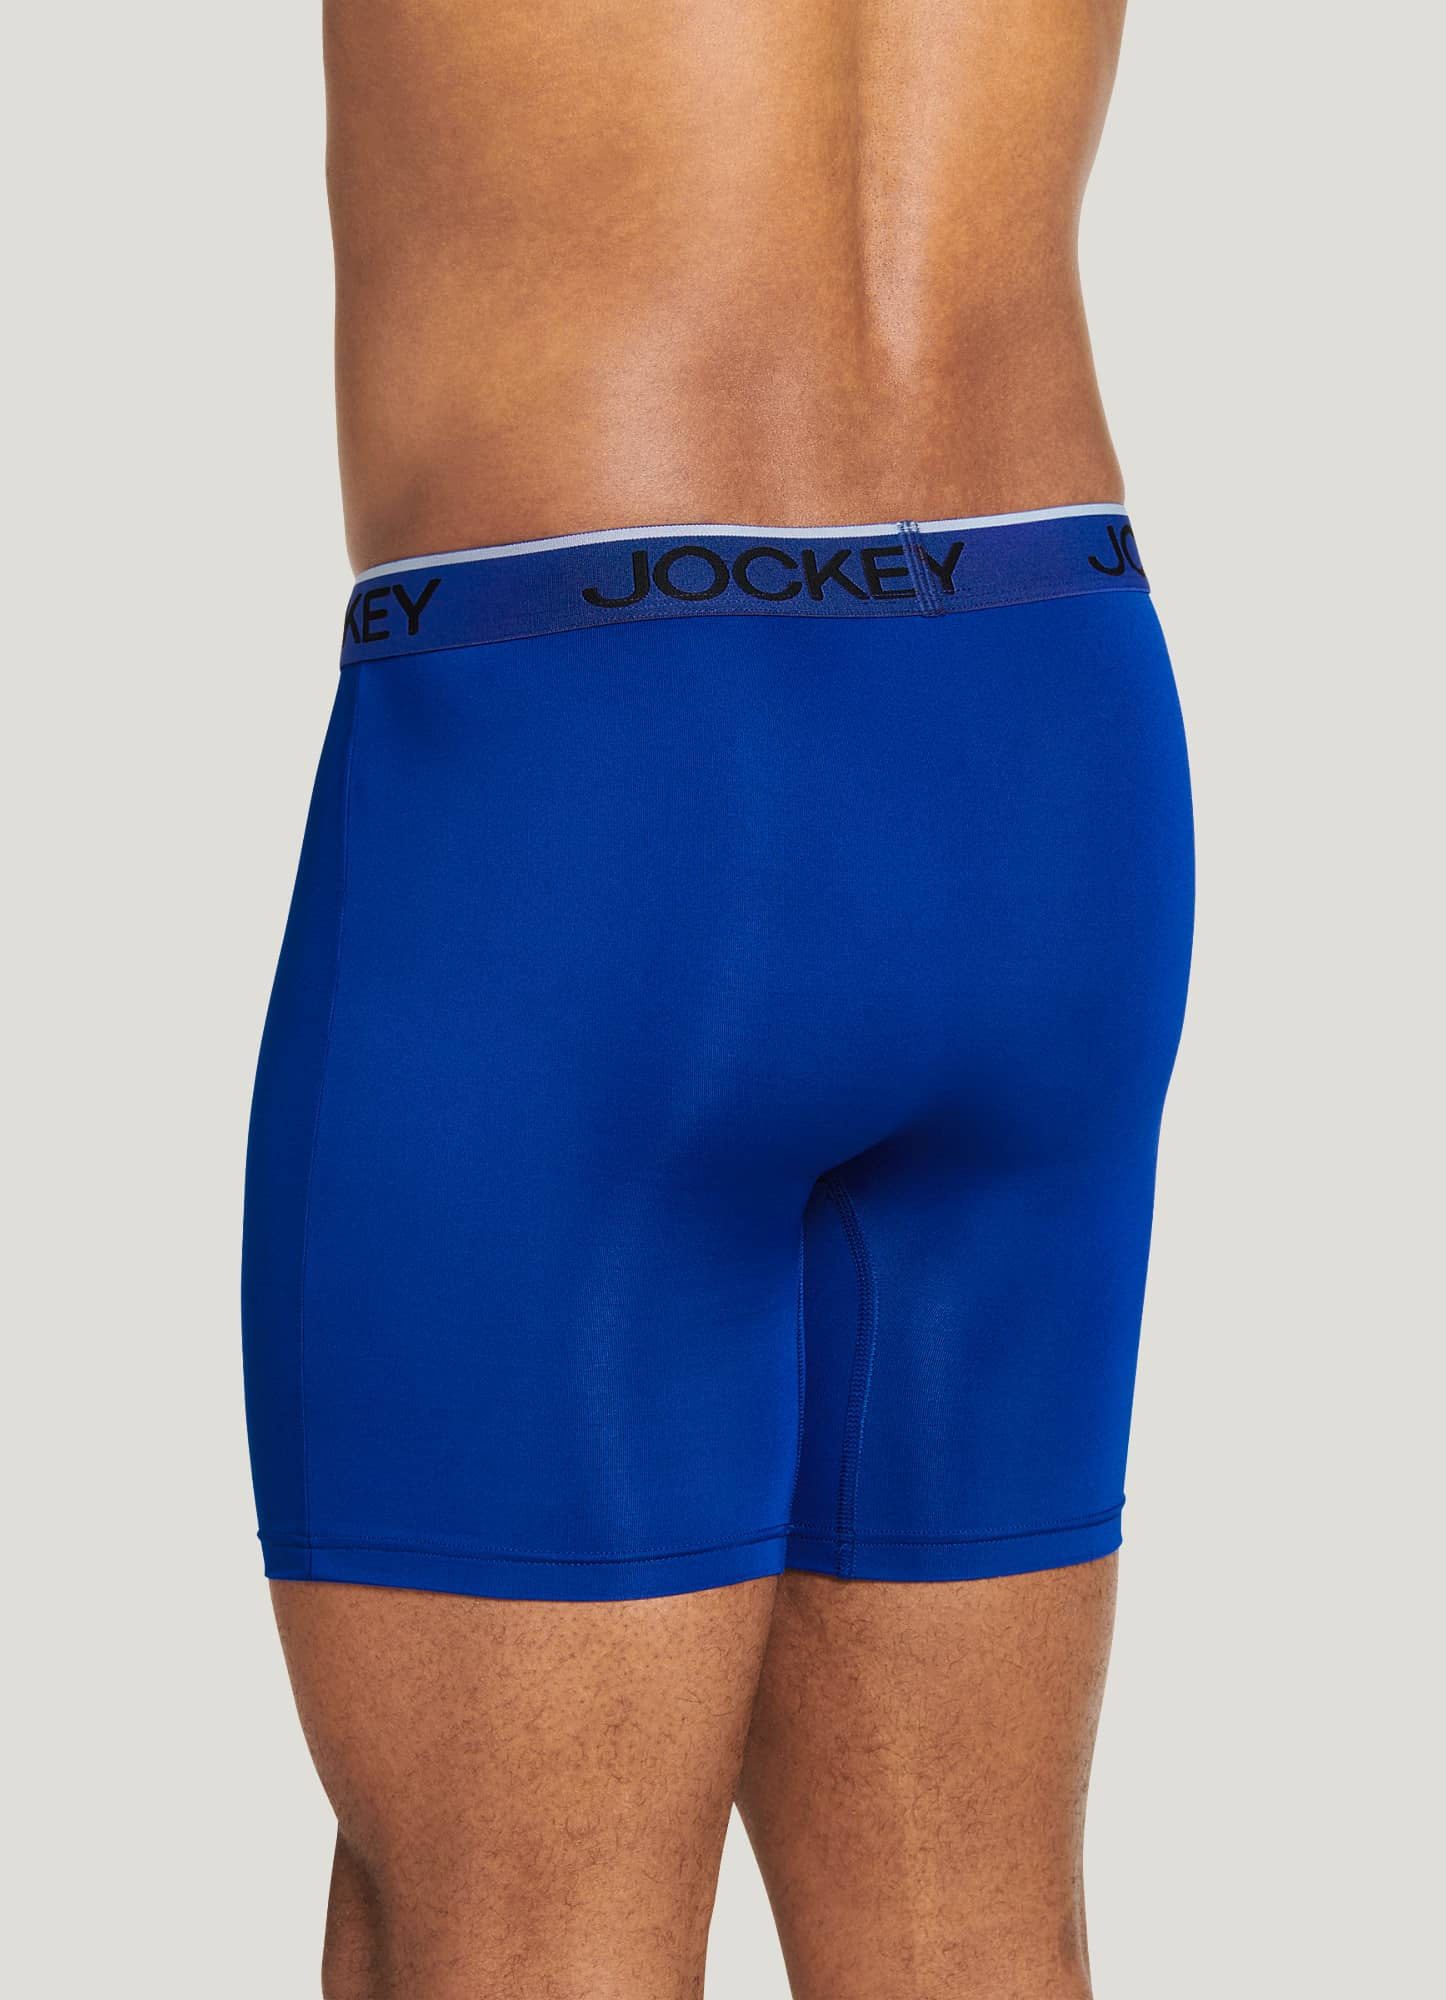 Underwear Review – Jockey Chafe Proof Boxer Brief – Underwear News Briefs